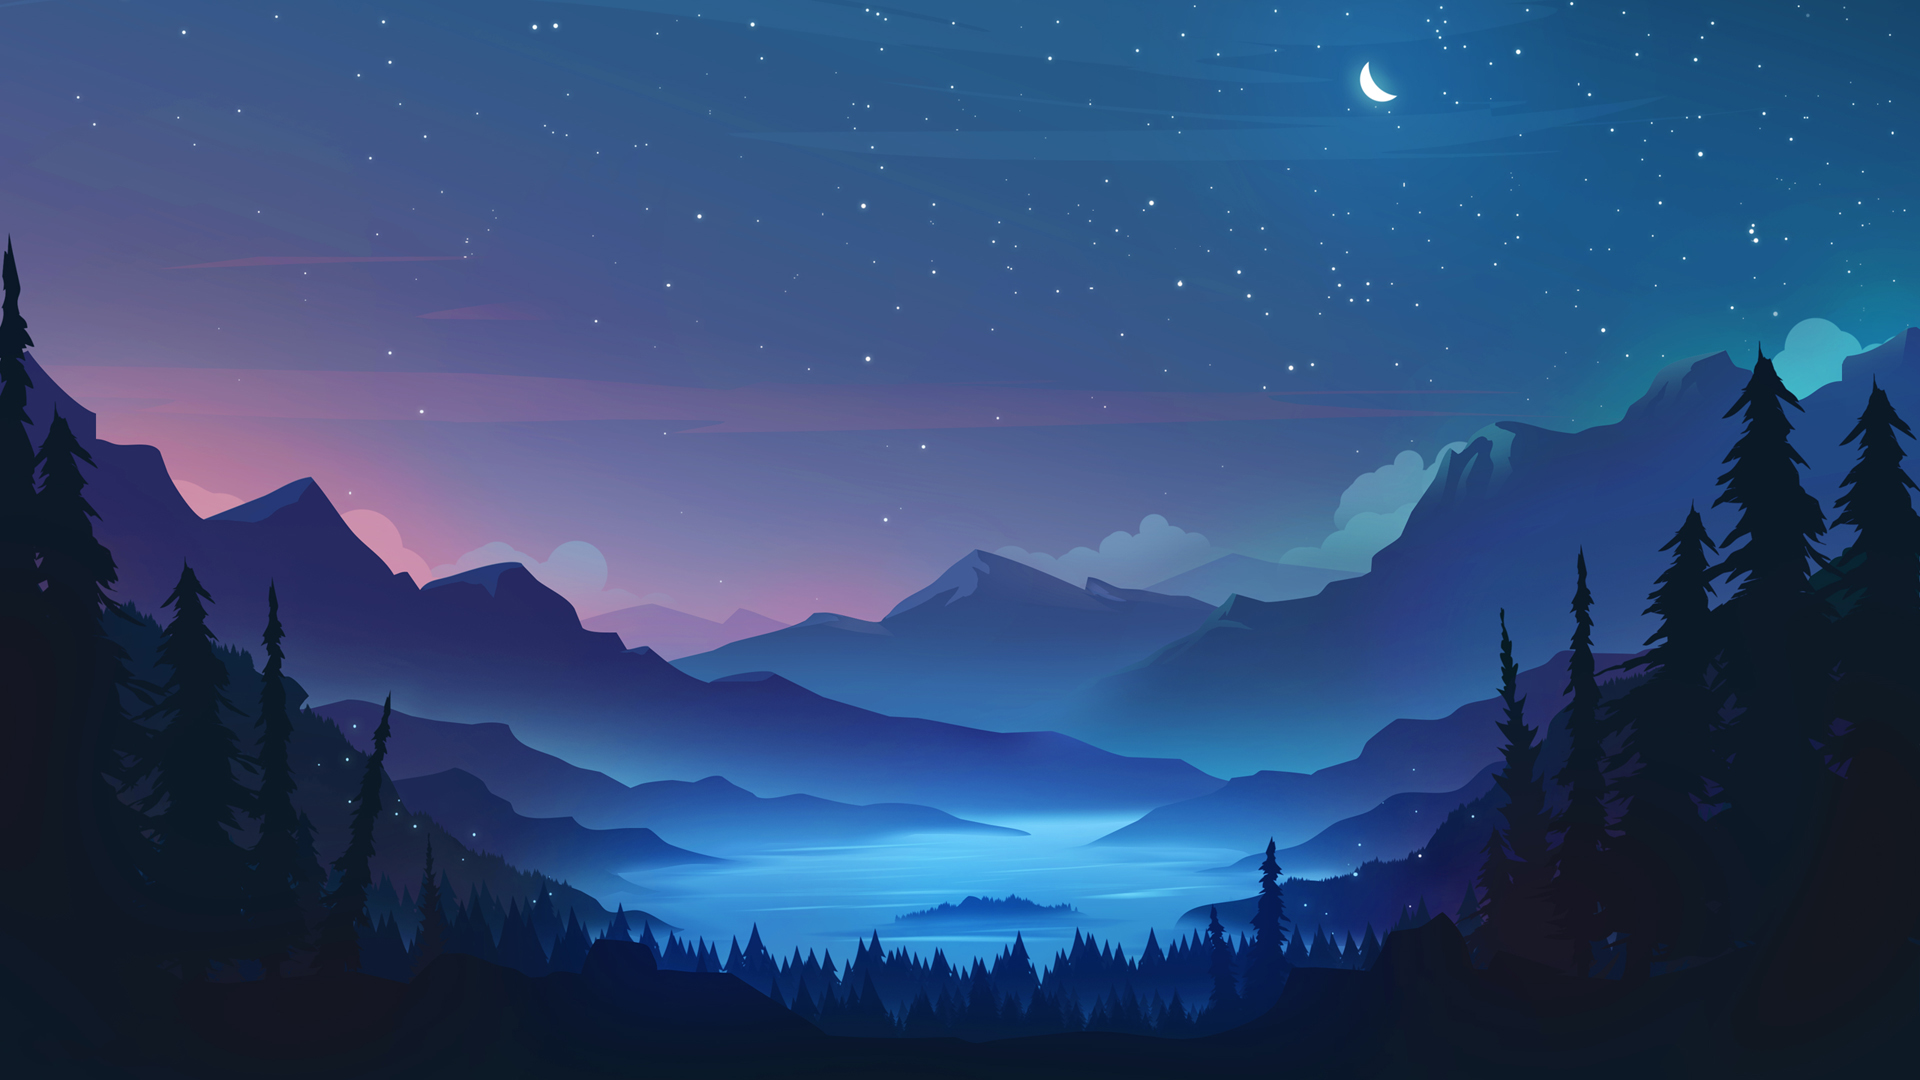 唯美 夜晚 山 树 星星 月亮 唯美 绘画风景 电脑 高清壁纸